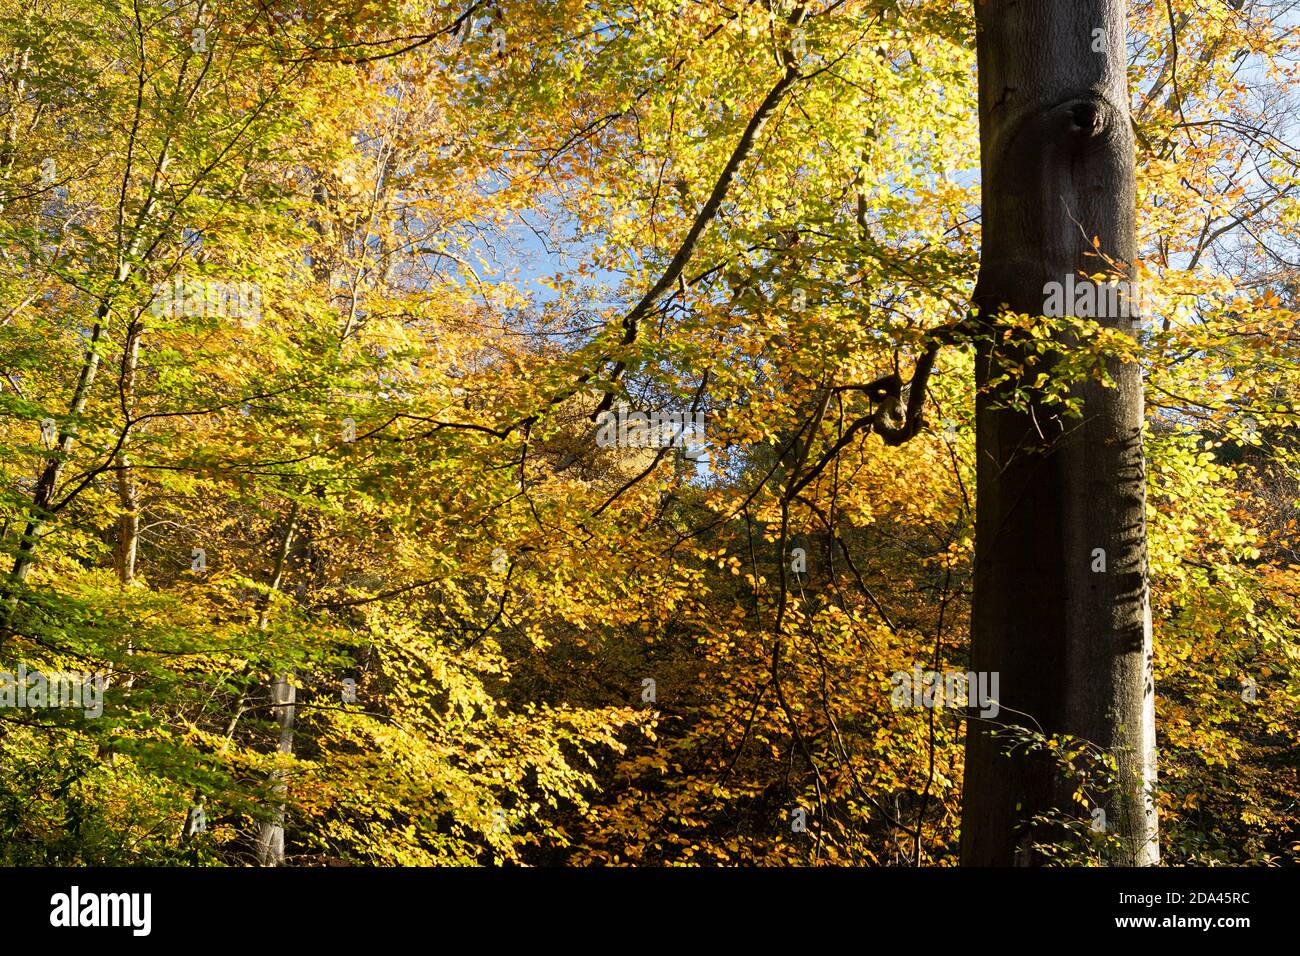 Herbstfarben im Wald, goldene und bronzefarbene Blätter auf reifen Bäumen, Großbritannien Stockfoto